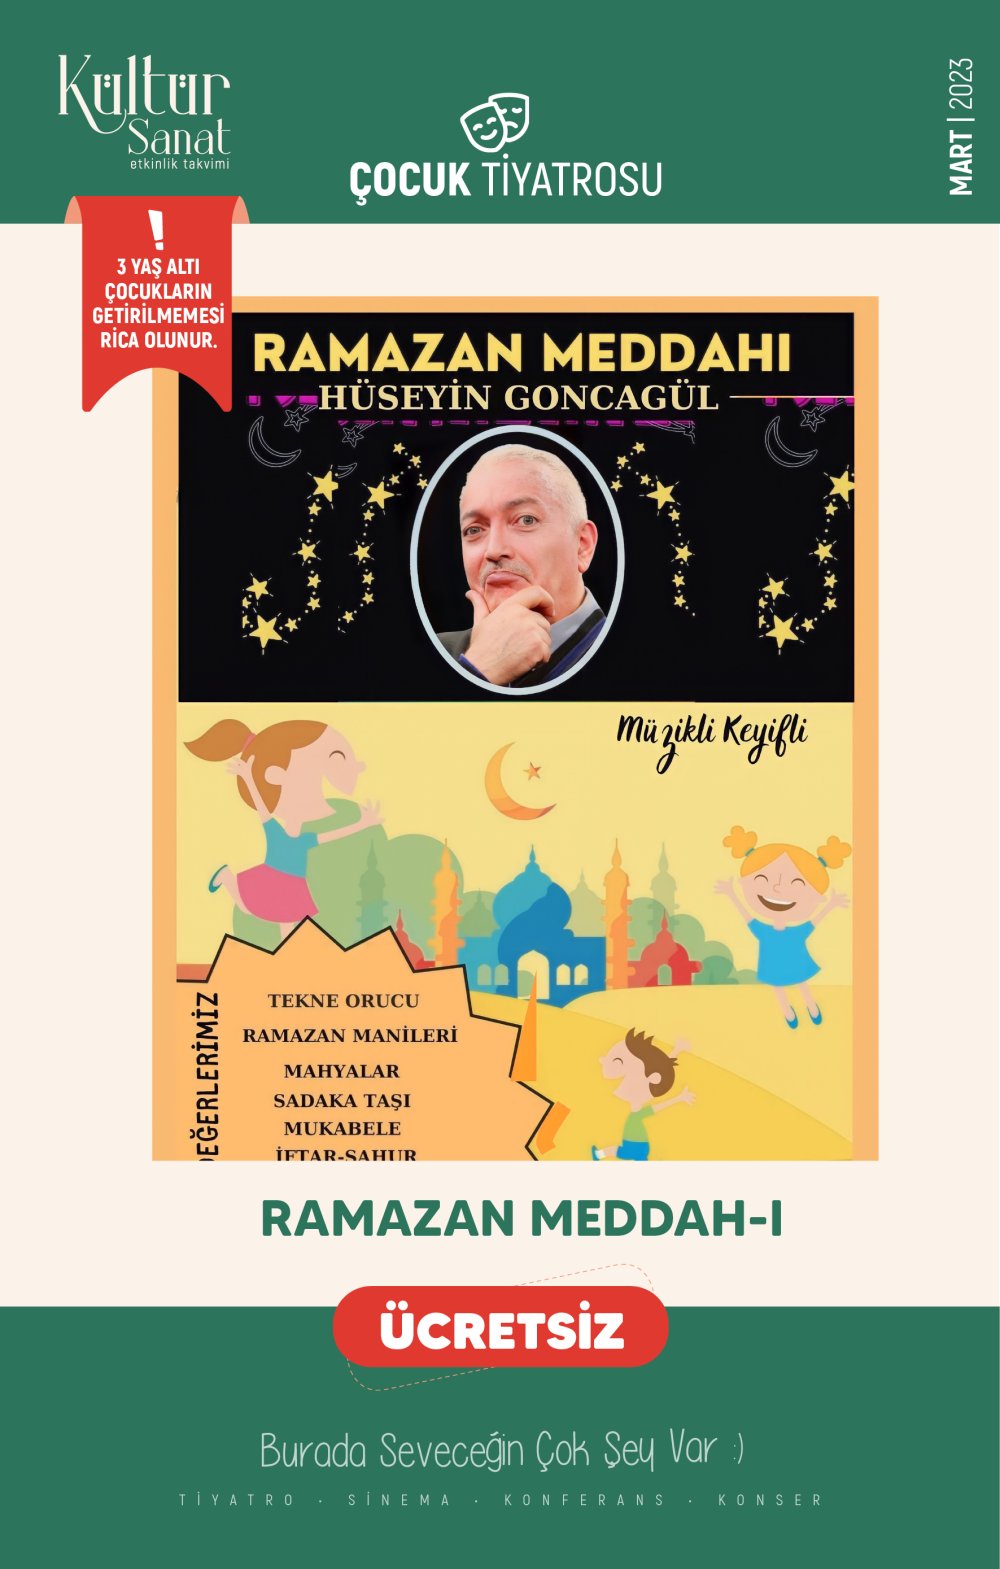 Ramazan Meddah'ı